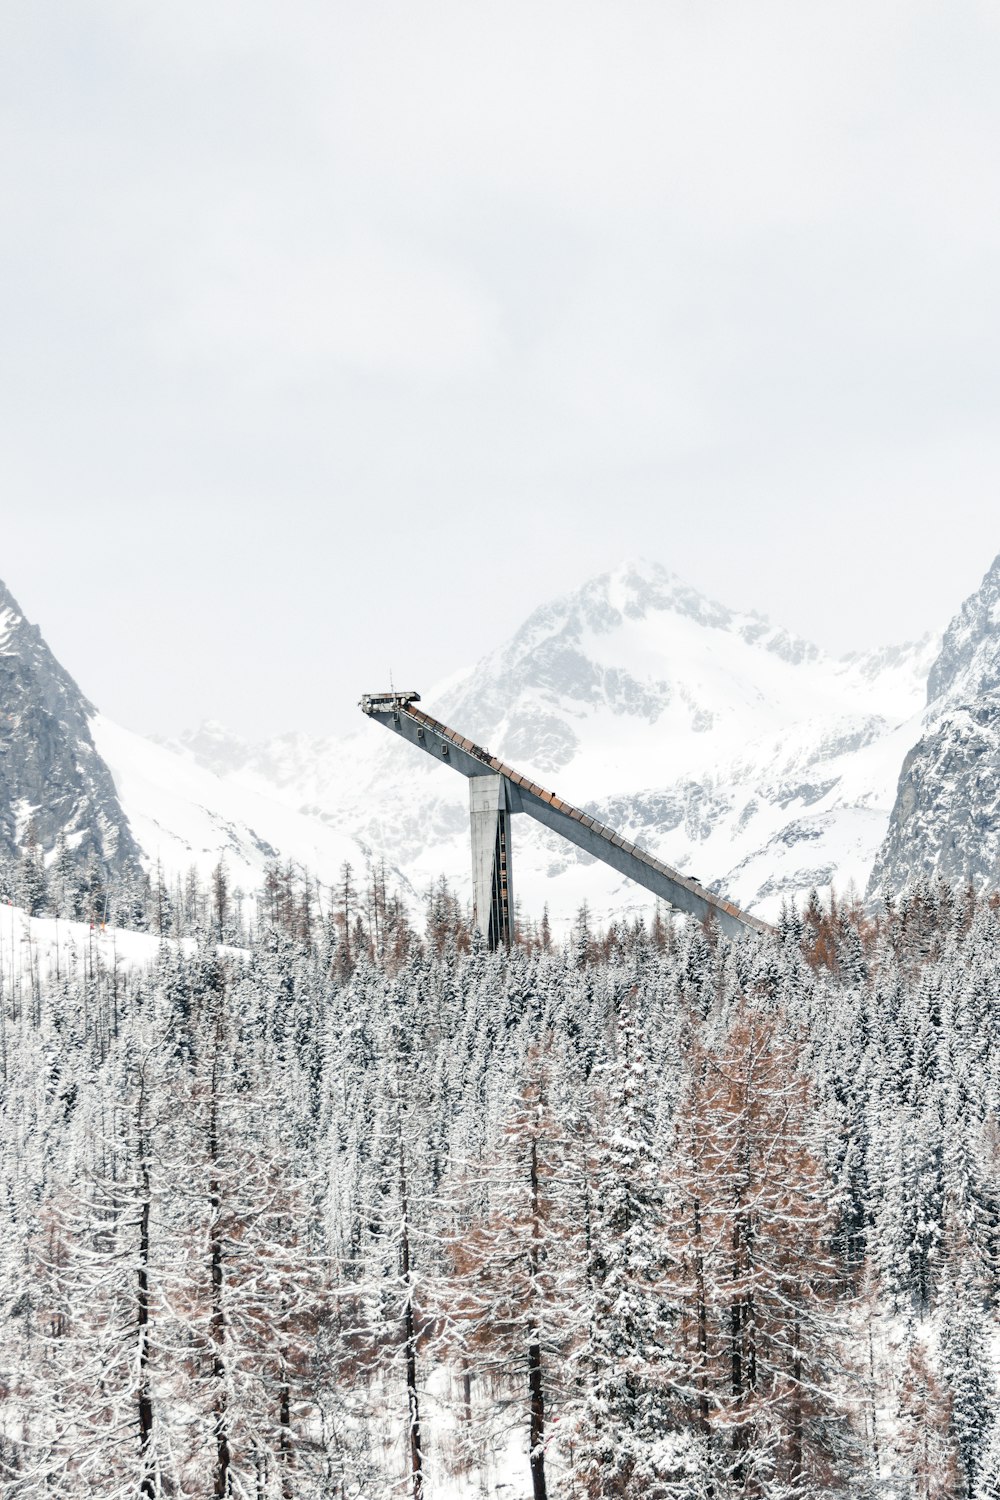 a bridge over a snowy mountain